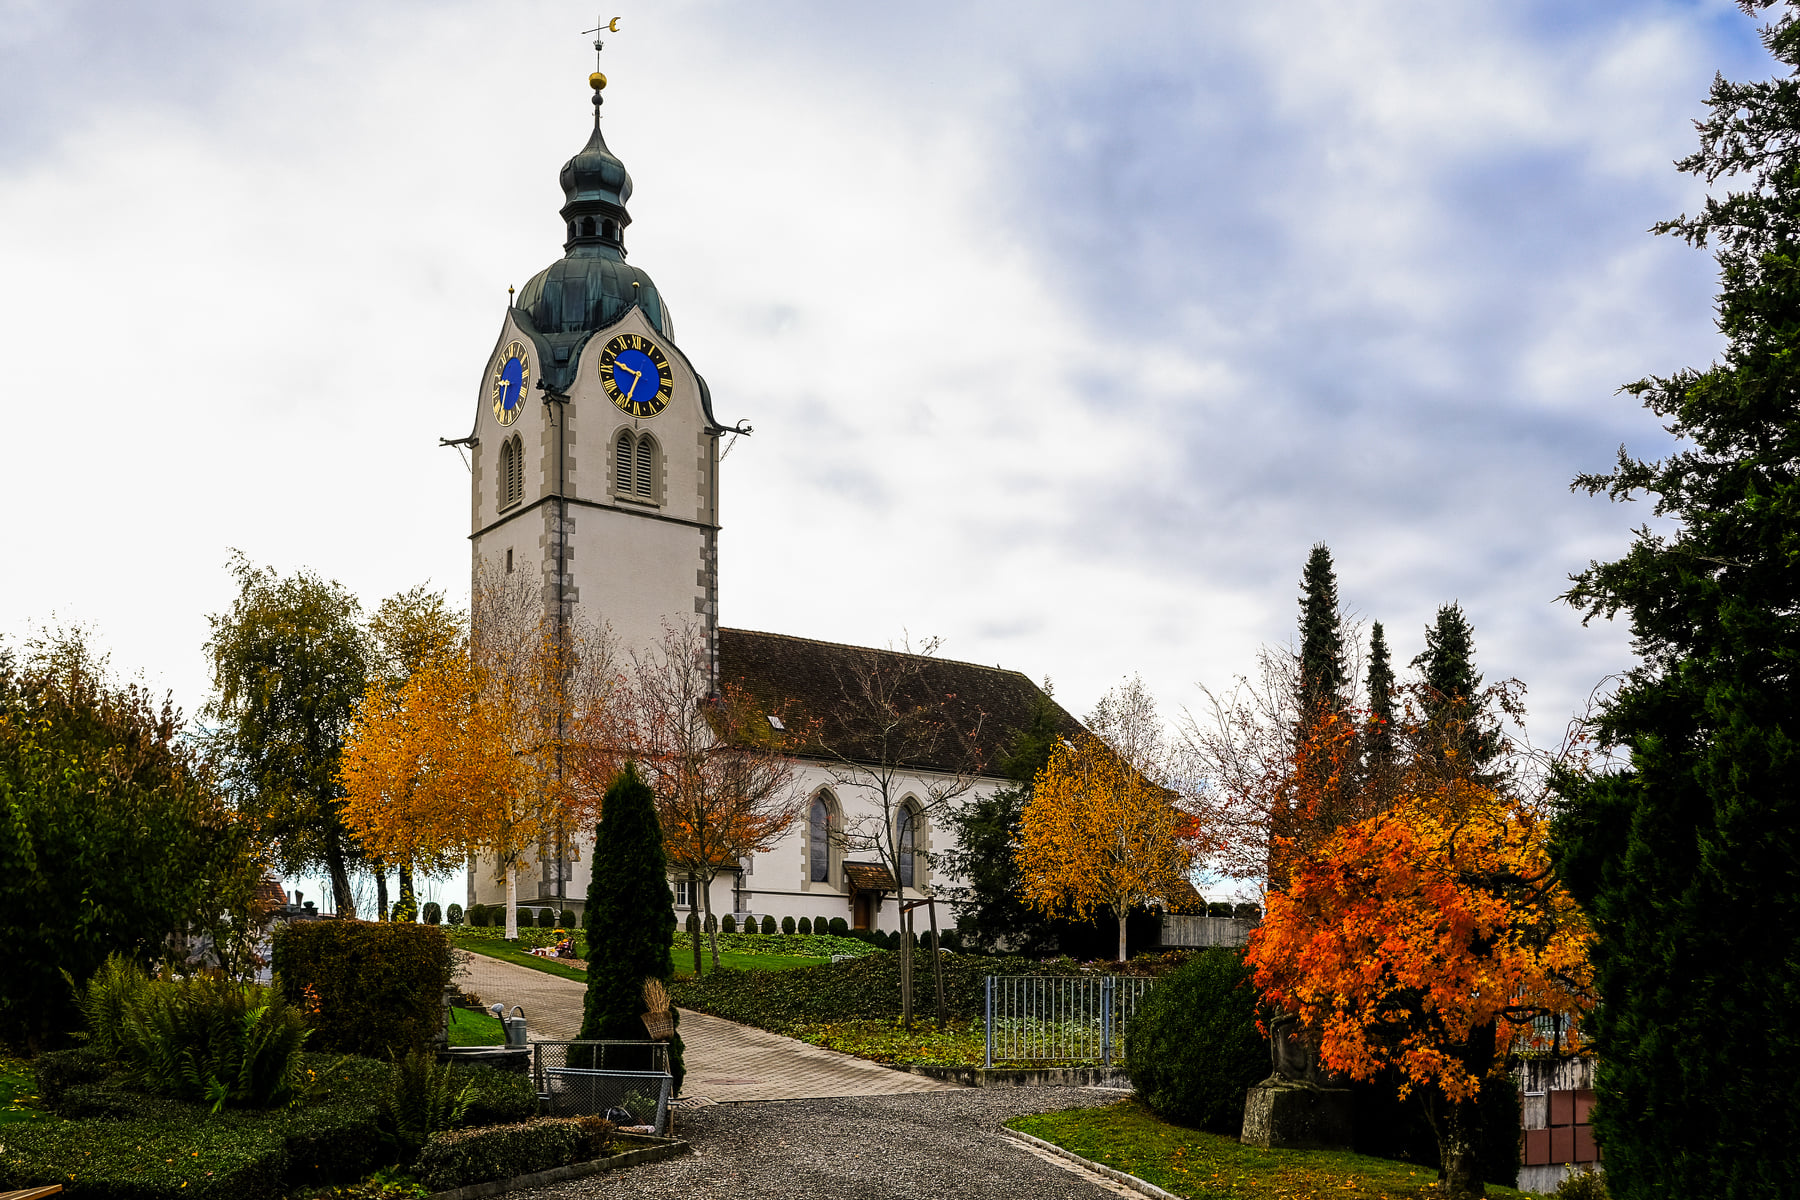 Die Kirche in Reinach ist die erste ref. gebaute Kirche in der Schweiz. Bauahr 1529